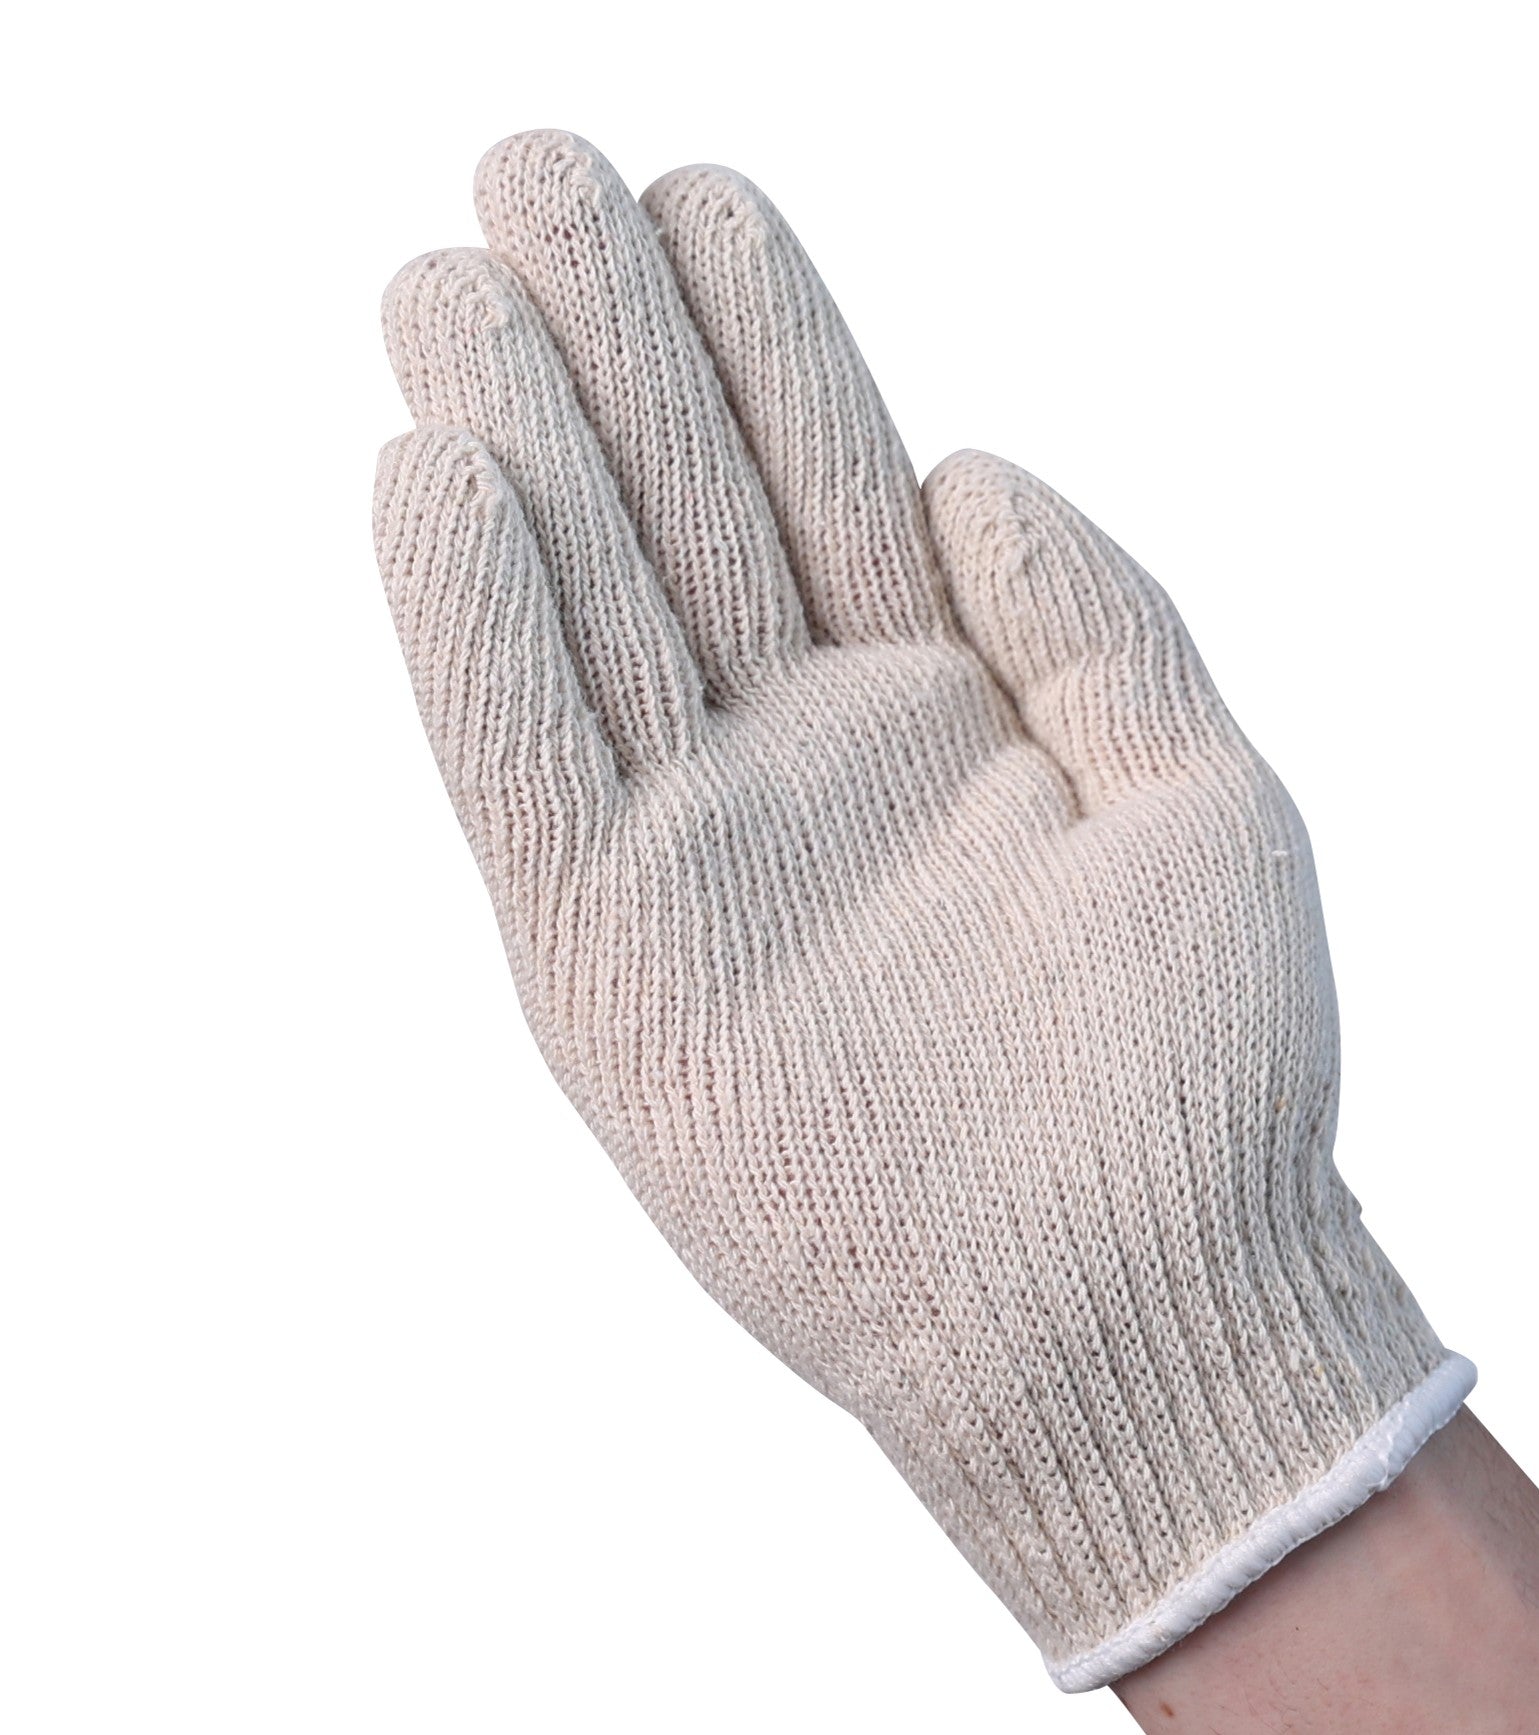 SKVG200 Gloves